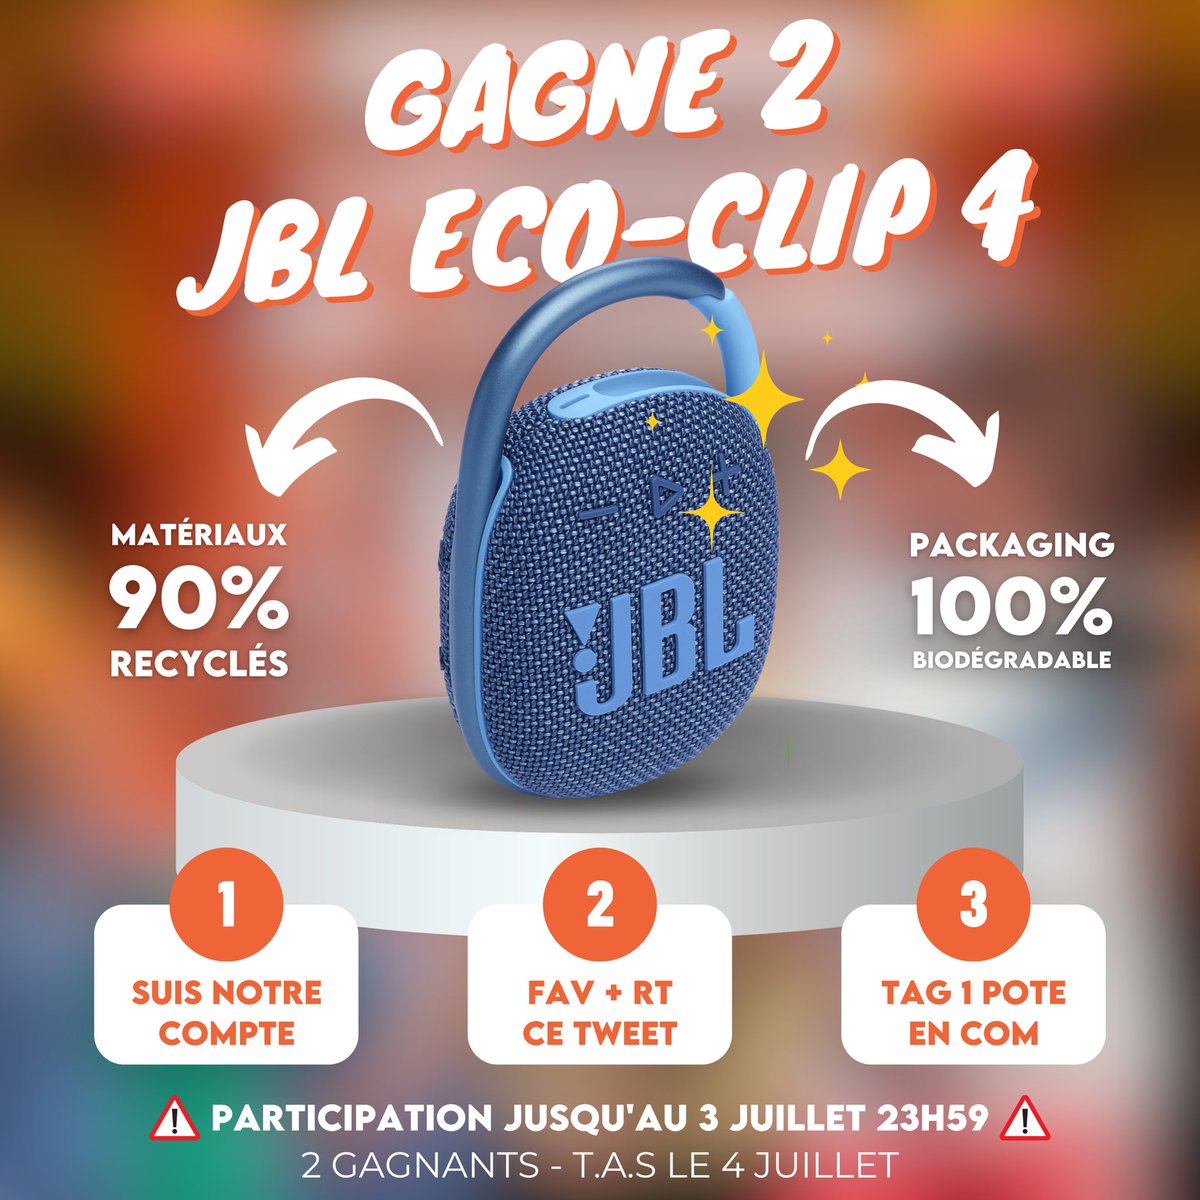 🤩 CONCOURS 🤩

Avec notre partenaire JBL, on vous fait gagner 2 des nouvelles enceintes JBL Eco-Clip 4, conçues avec des matériaux recyclés ! ♻️

Pour jouer : RT x FAV x FOLLOW et identifie 1 personne dans les commentaires !

Fin le 3 juillet à 23h59⏳